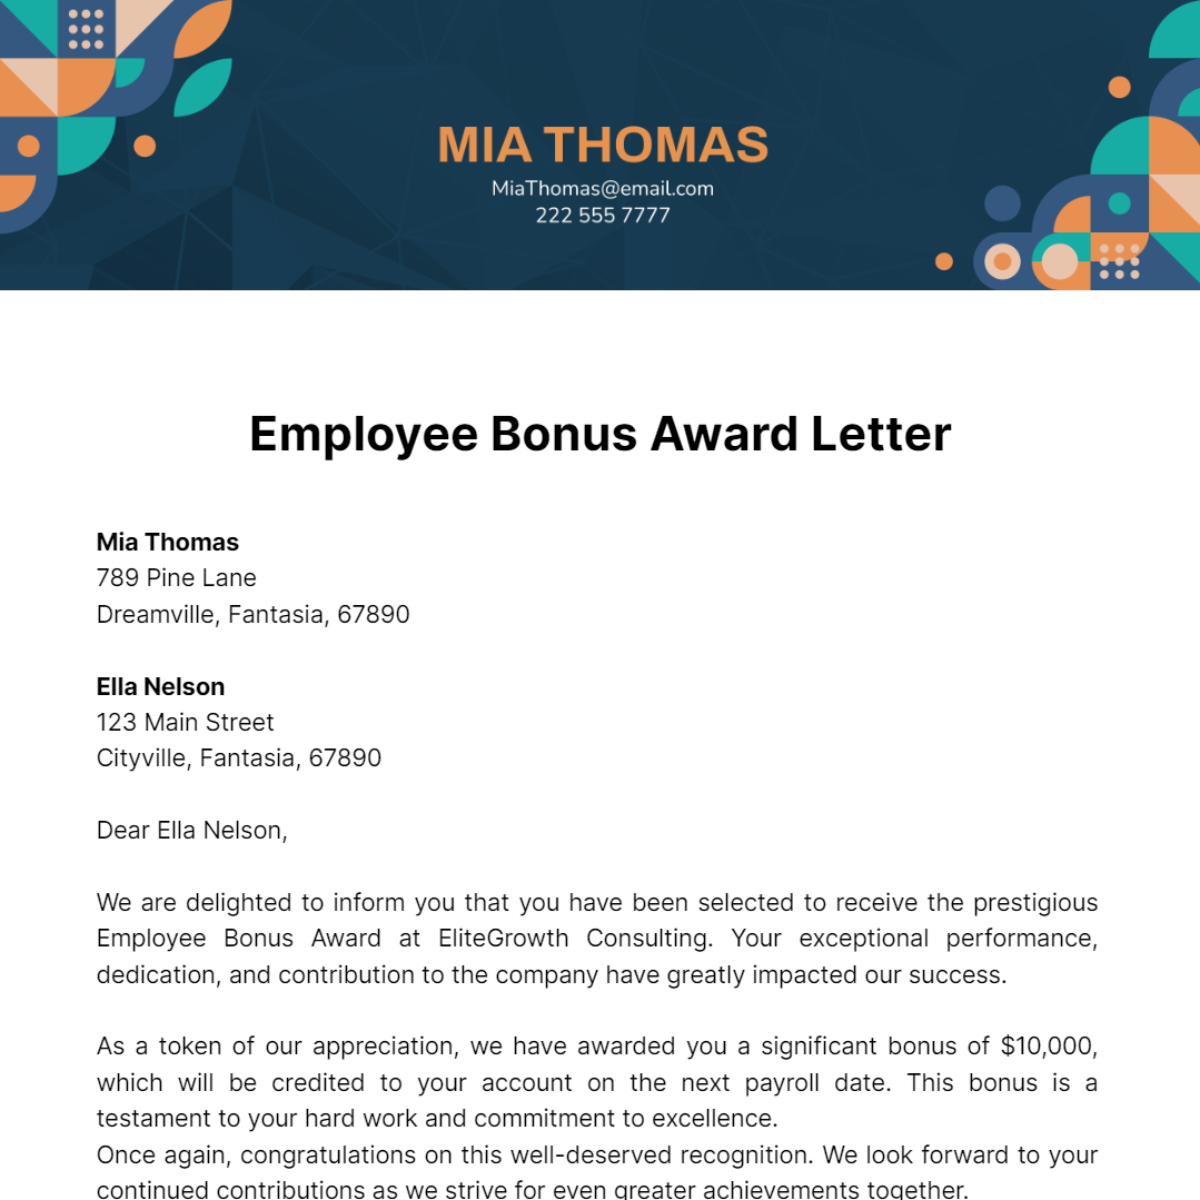 Employee Bonus Award Letter Template